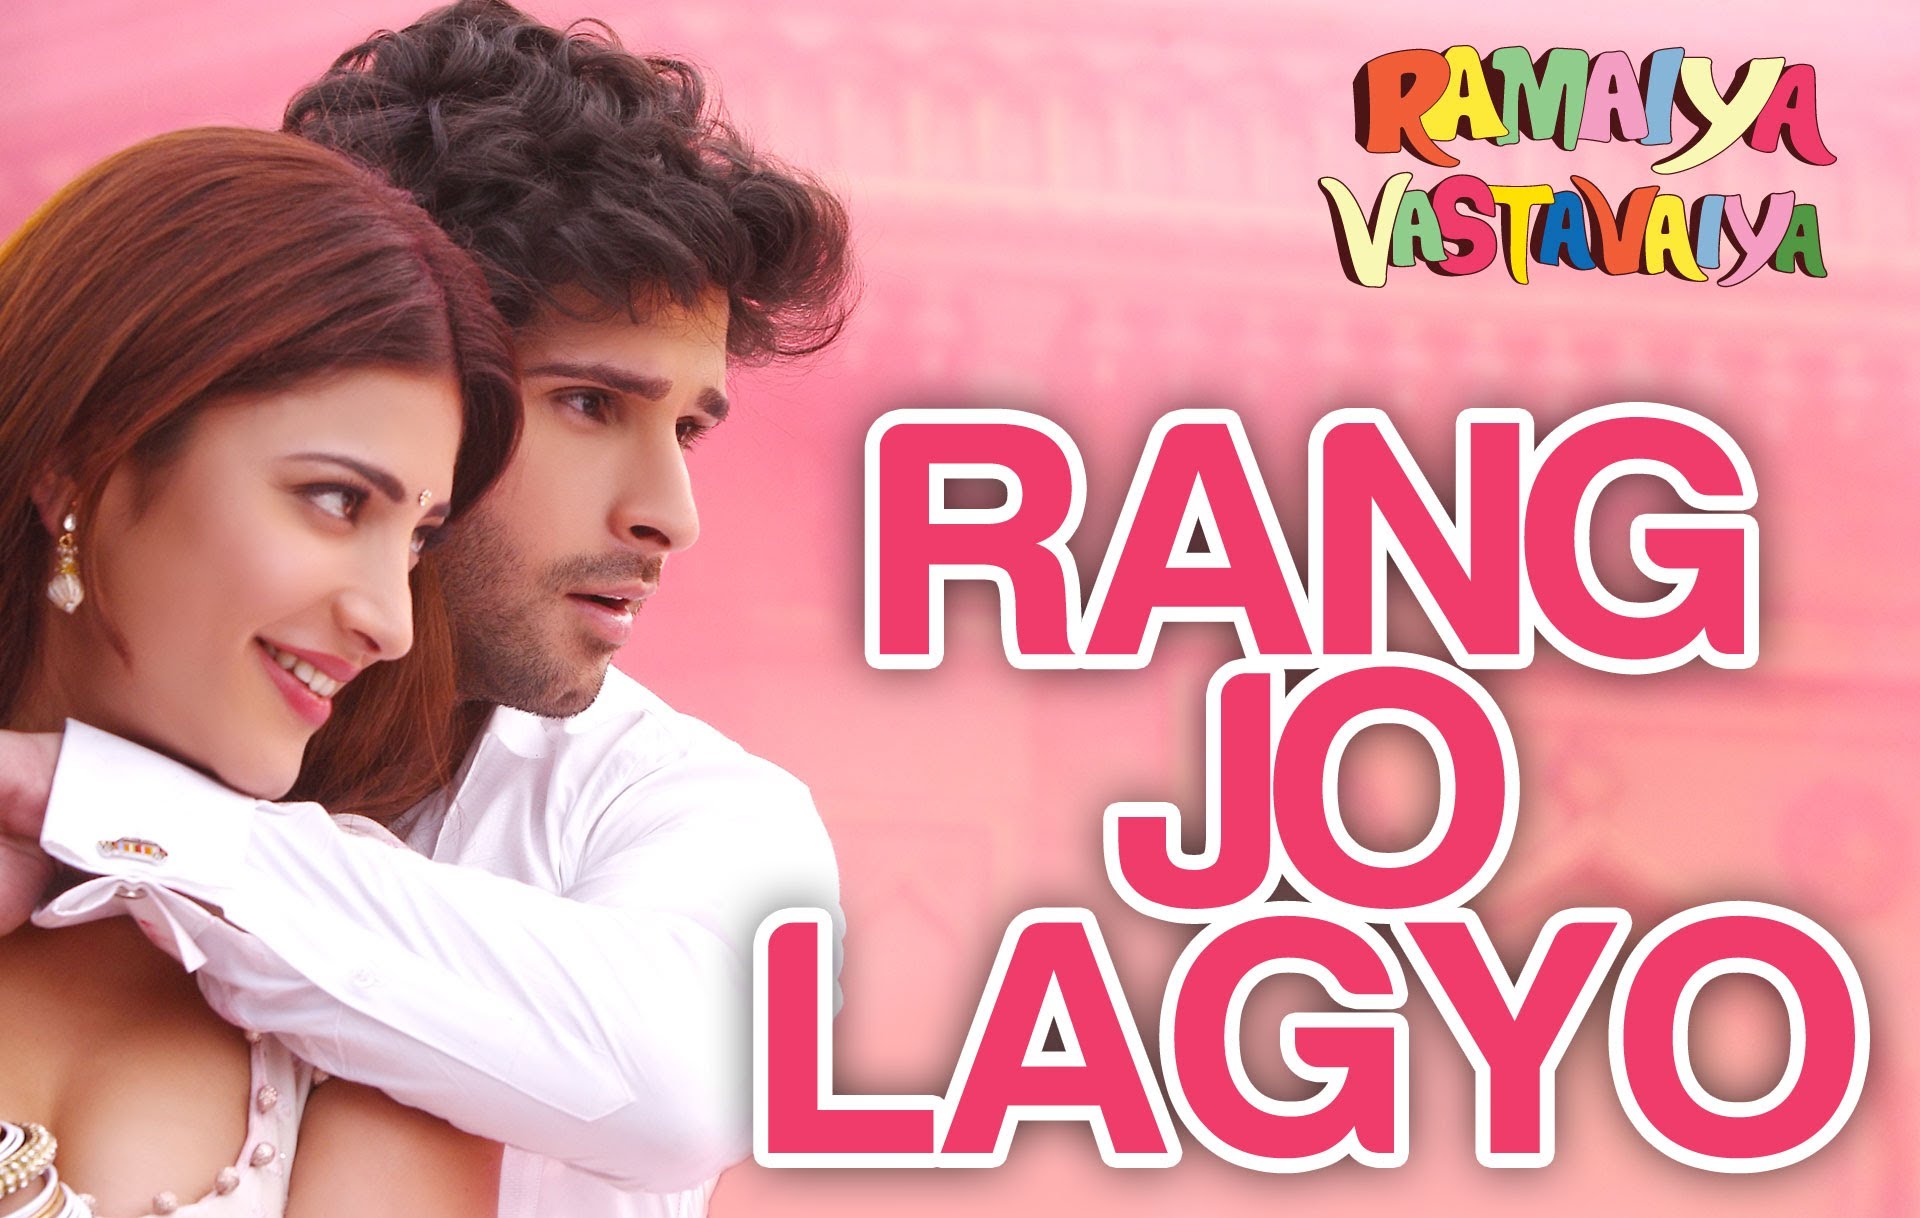 Rang Jo Lagyo Lyrics in Hindi & English - Atif Aslam | Ramaiya Vastavaiya